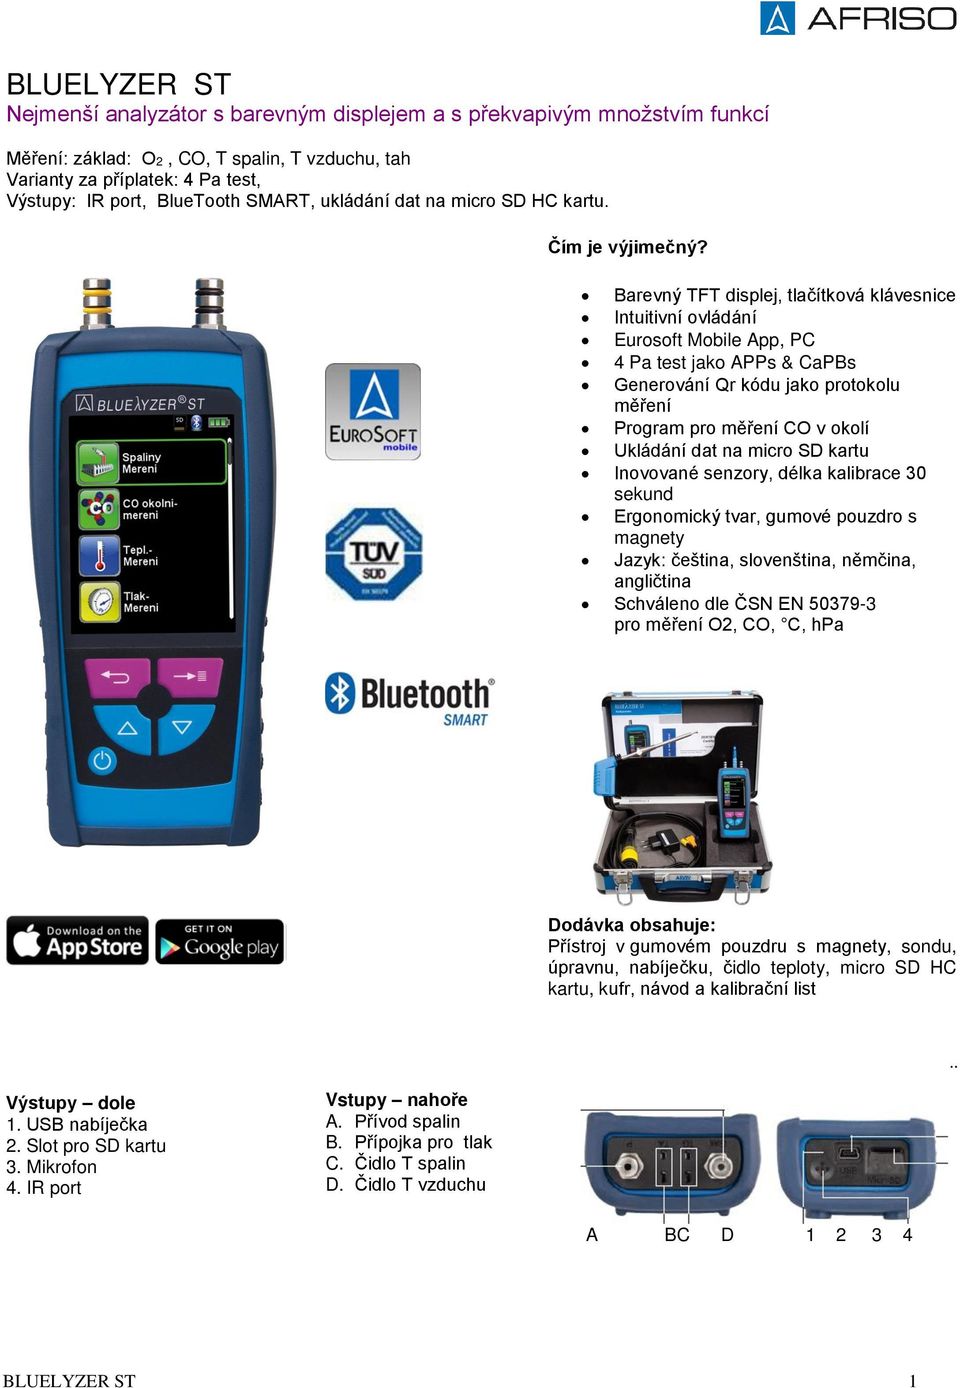 Barevný TFT displej, tlačítková klávesnice Intuitivní ovládání Eurosoft Mobile App, PC 4 Pa test jako APPs & CaPBs Generování Qr kódu jako protokolu měření Program pro měření CO v okolí Ukládání dat